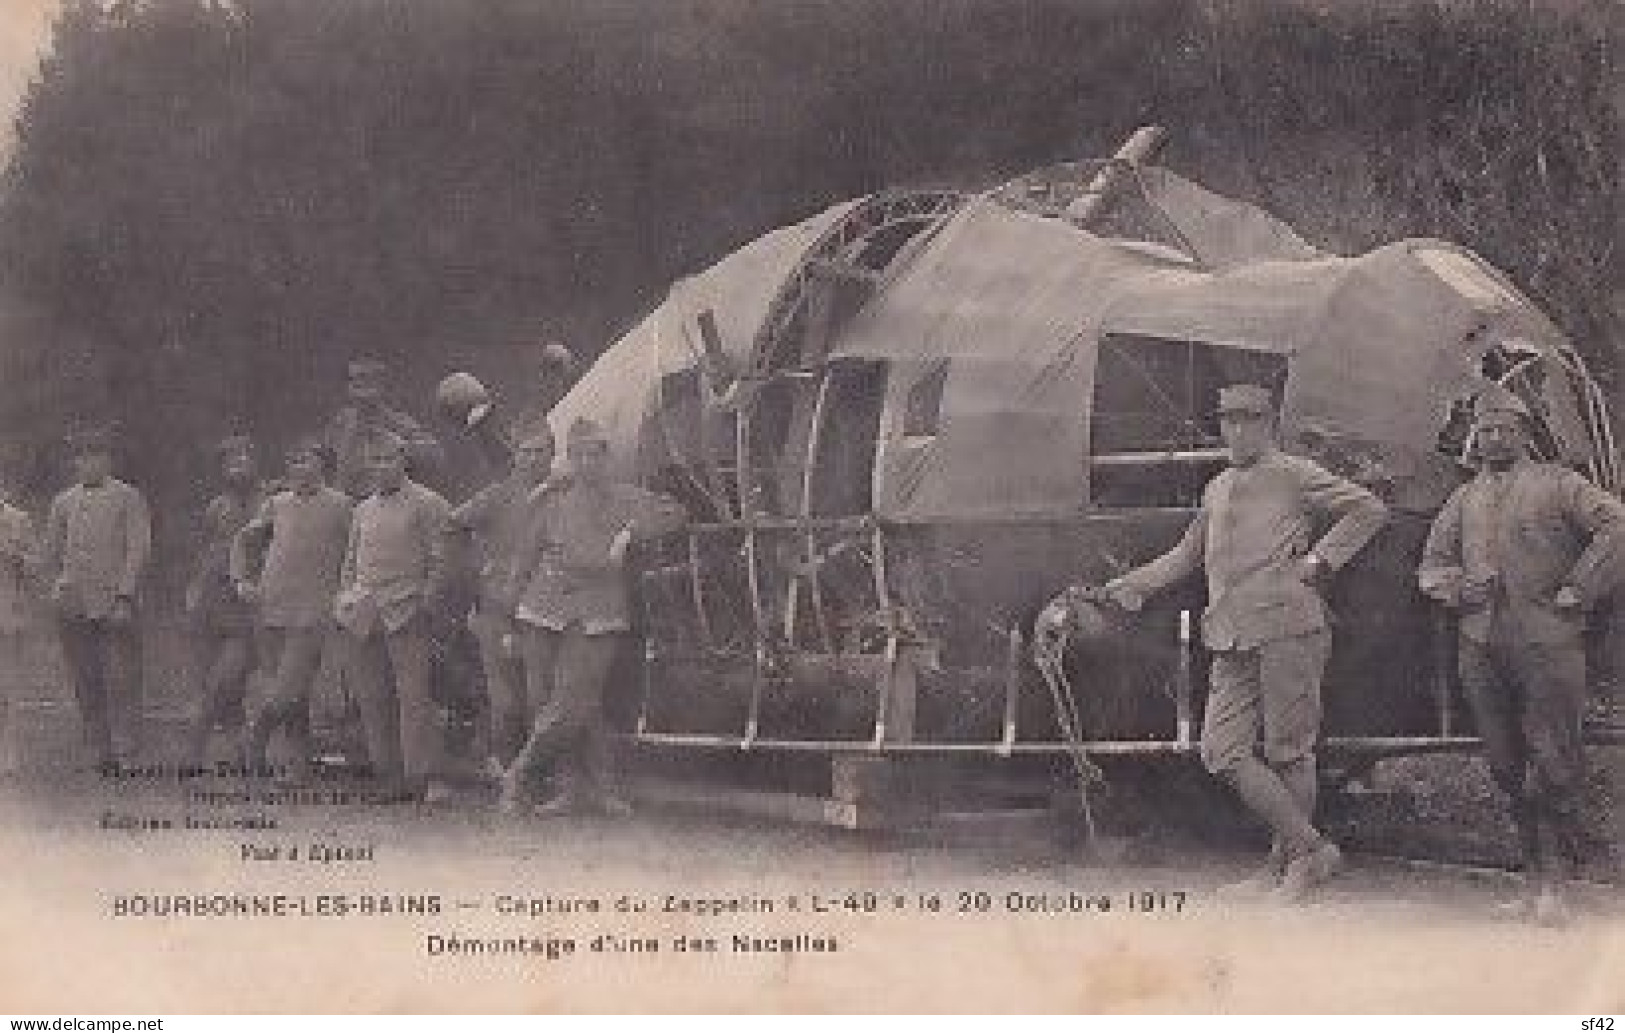 BOURBONNE LES BAINS         CAPTURE DU ZEPPELIN  L 49  LE 20 10 1917    DEMONTAGE D UNE NACELLE - Oorlog 1914-18